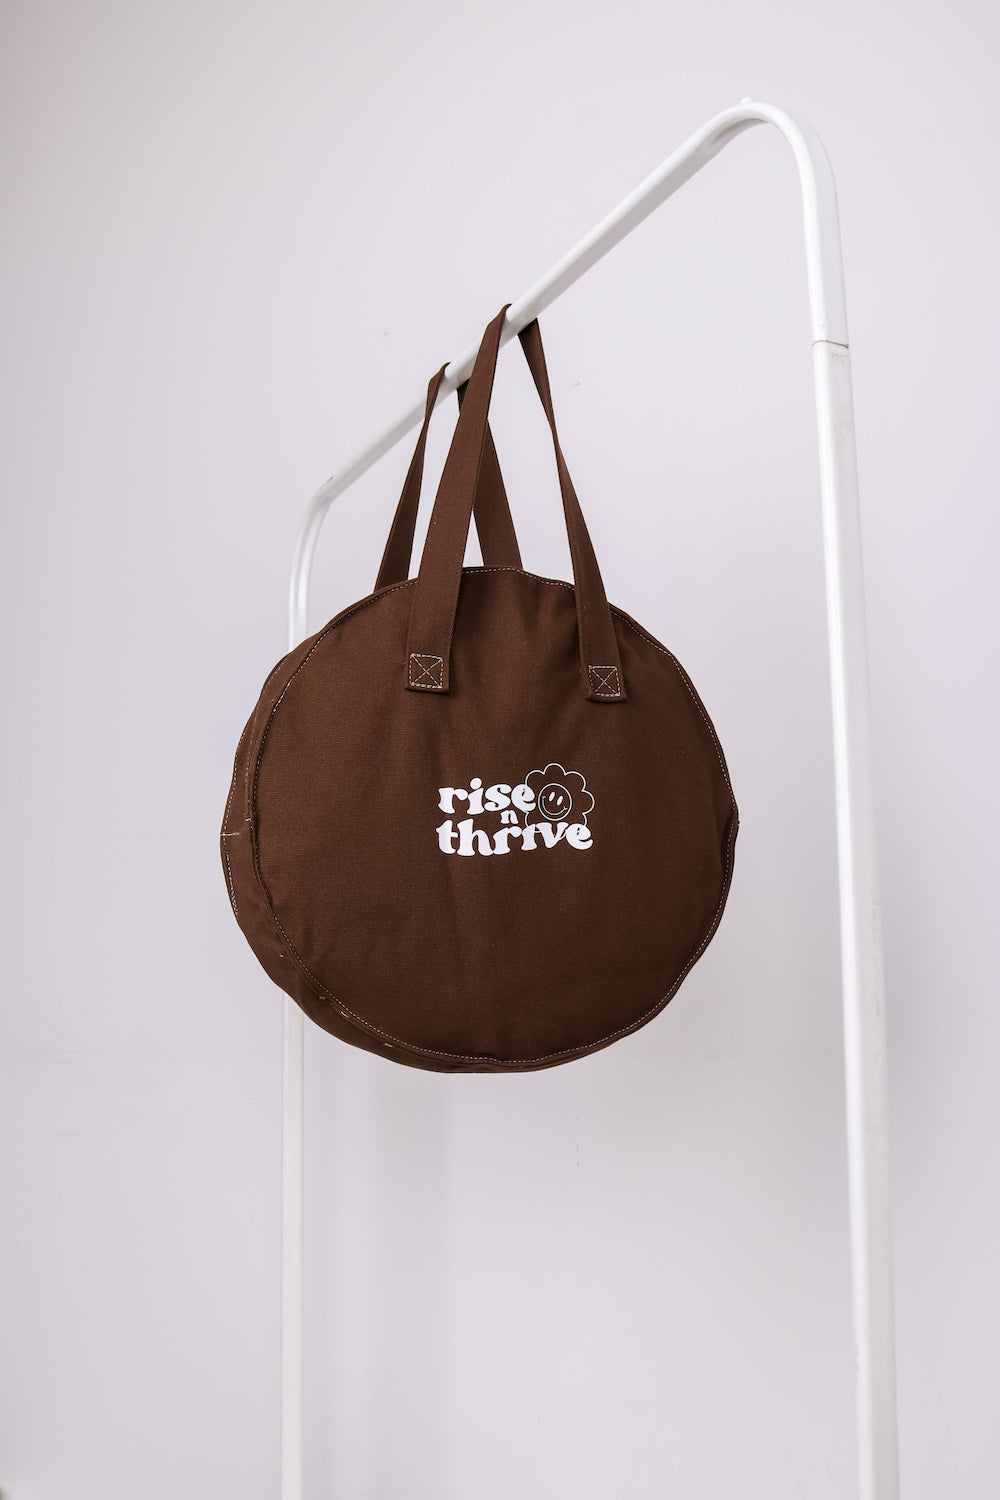 Rise & Thrive Circular Tote Bag in Mocha Brown